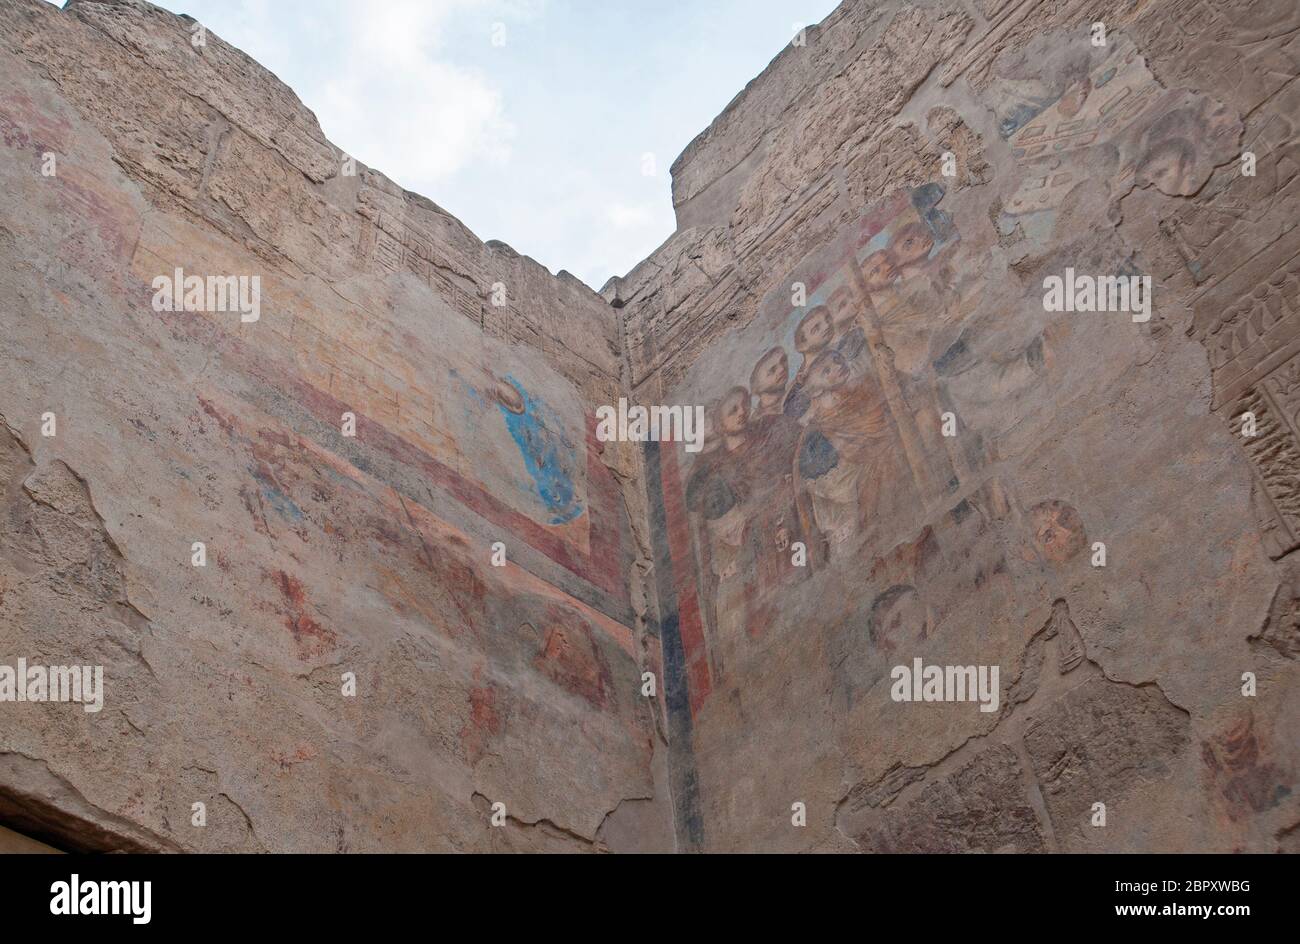 Pinturas cristianas romanas sobre jeroglíficos egipcios en la pared del antiguo templo egipcio de Luxor en Egipto Foto de stock